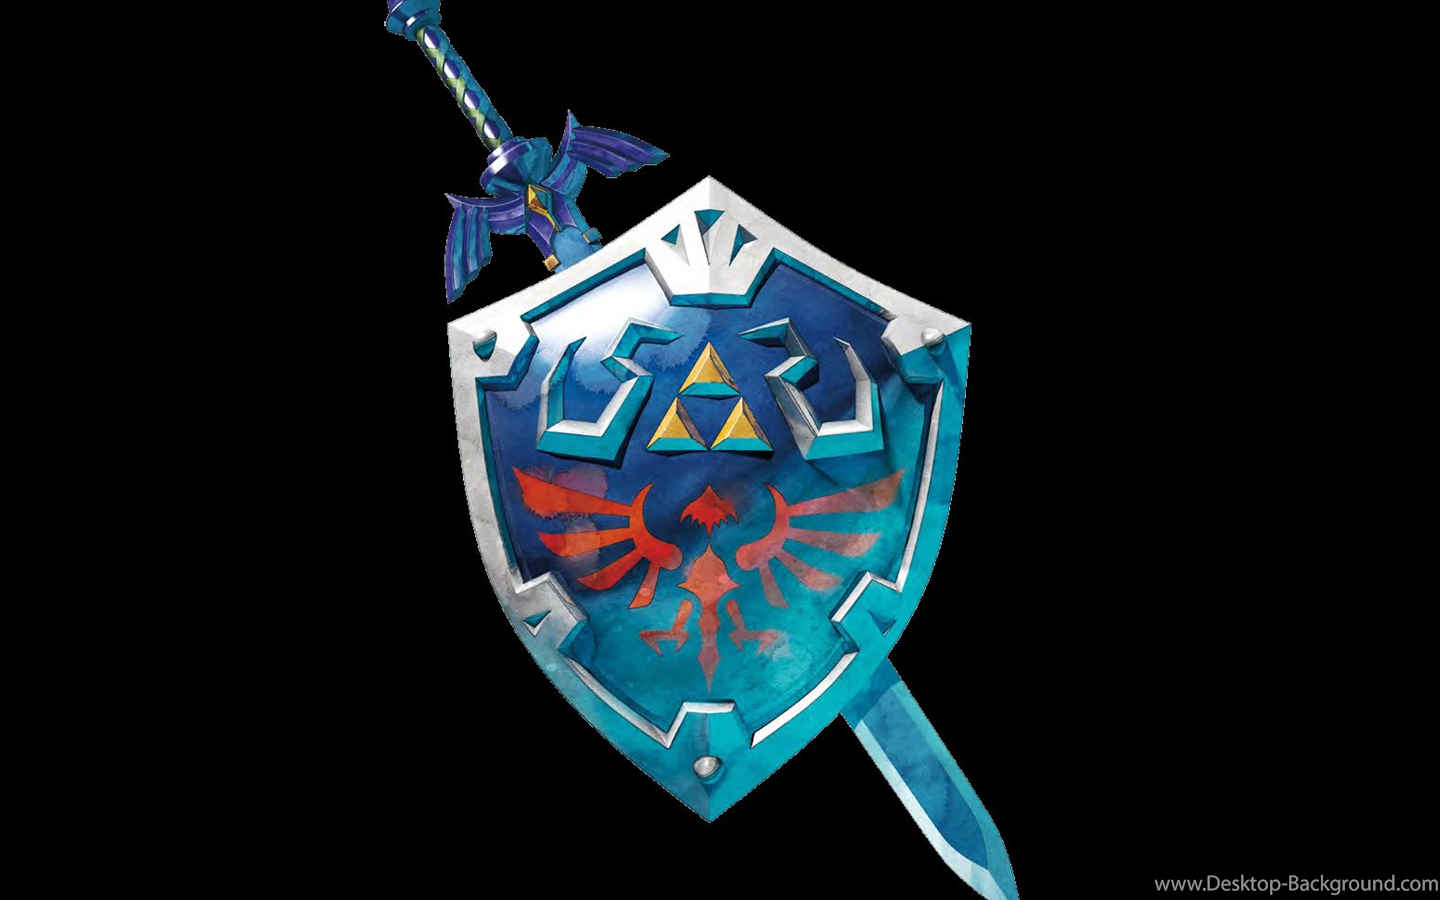 The Legend Of Zelda Master Sword Wallpaper Image. Zelda master